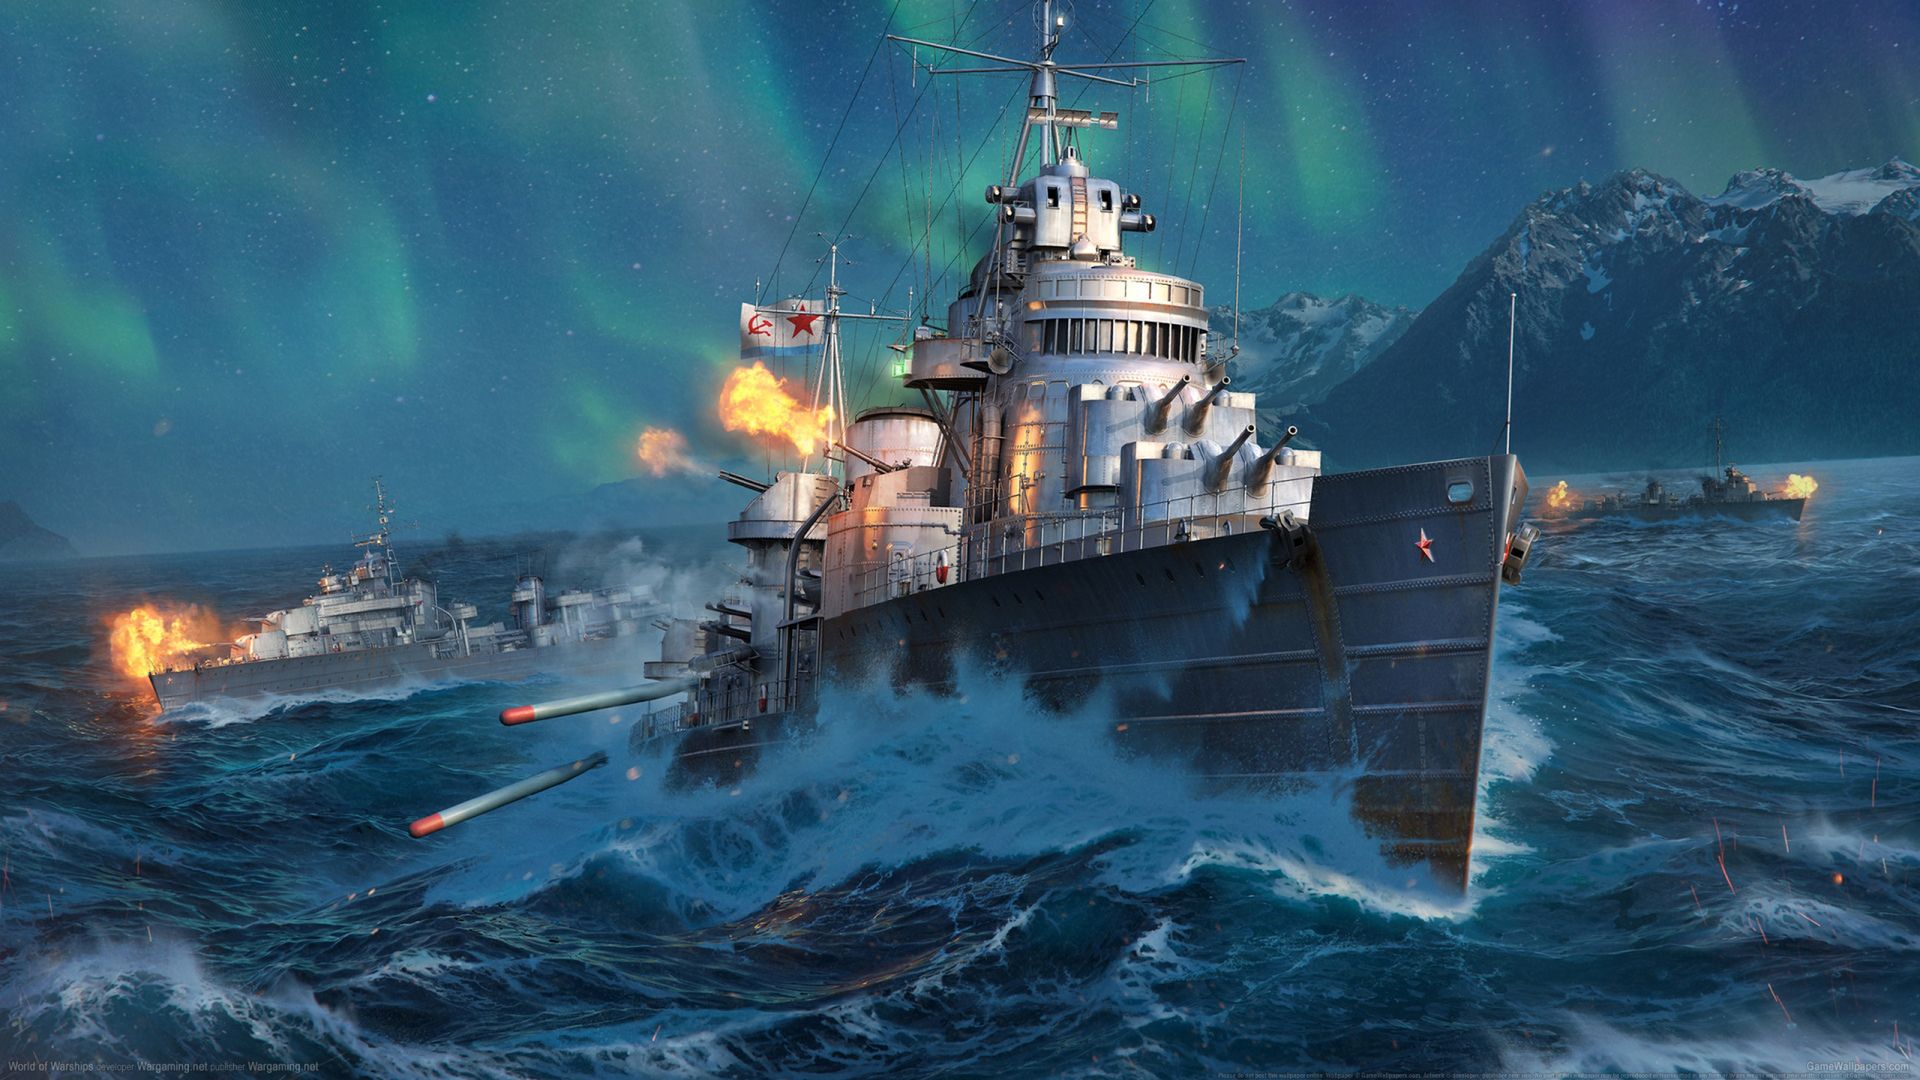 world of warships: legends facebook